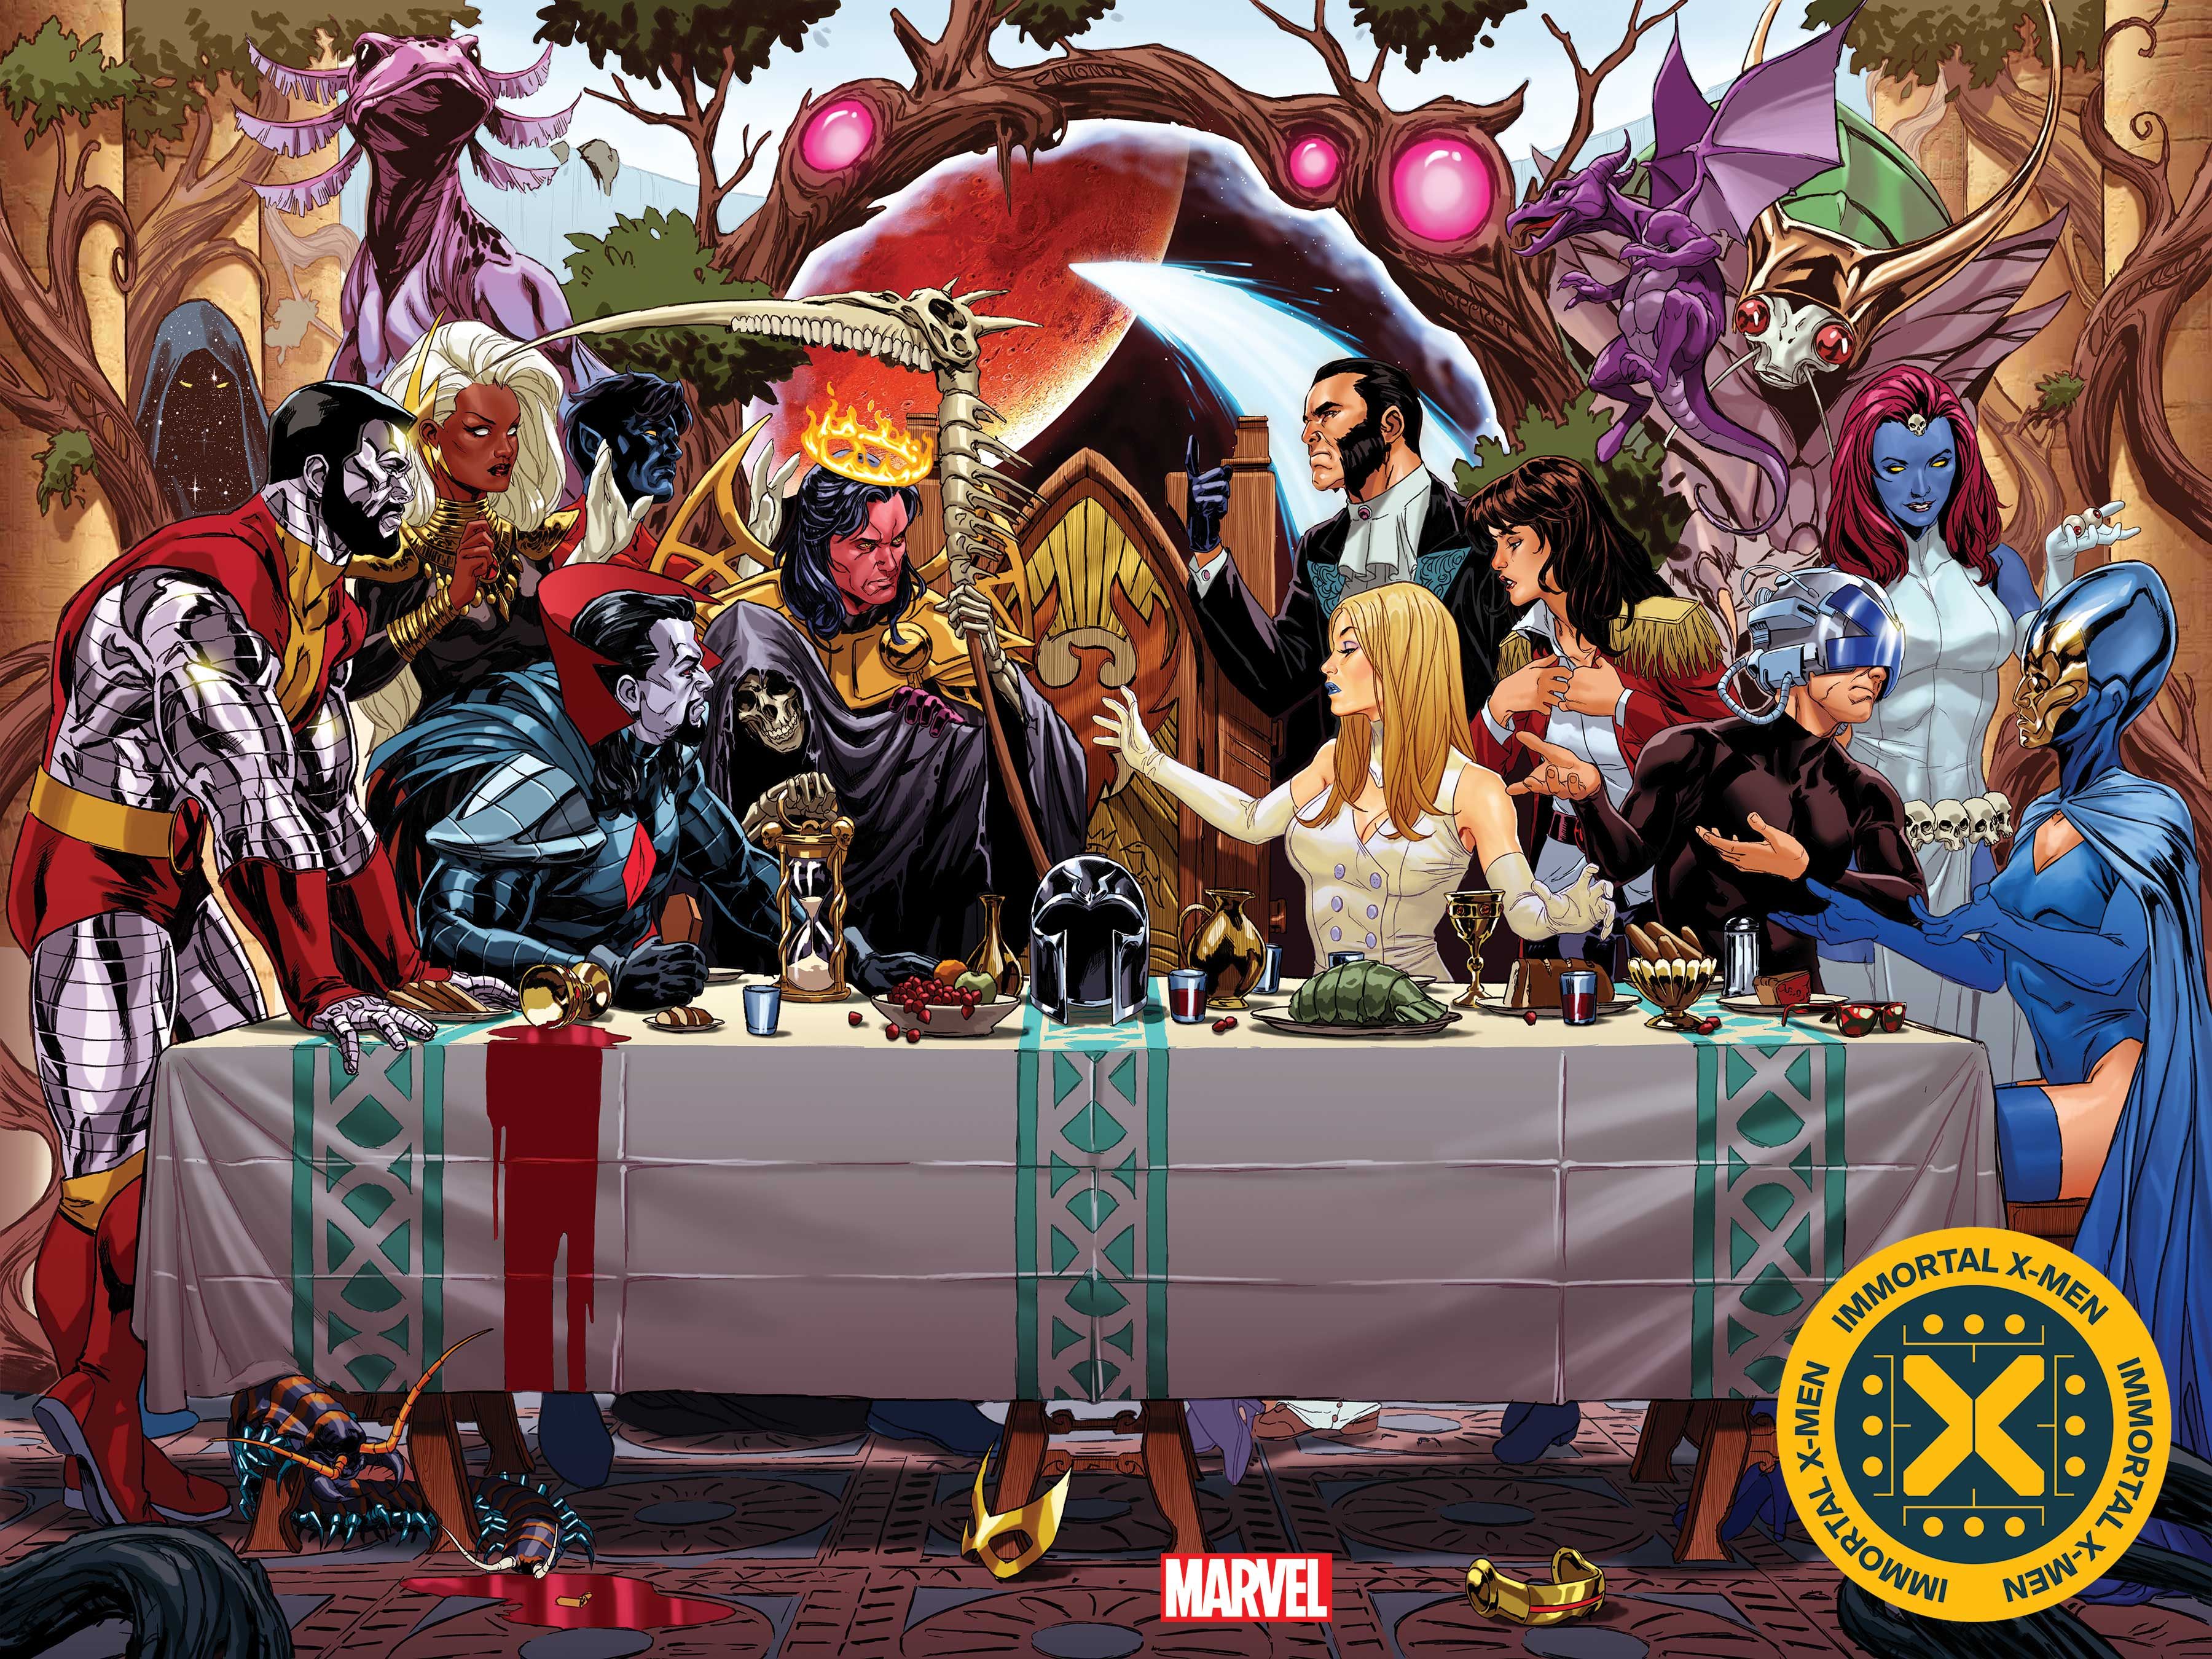 X-Men Immortal X-Men Cover